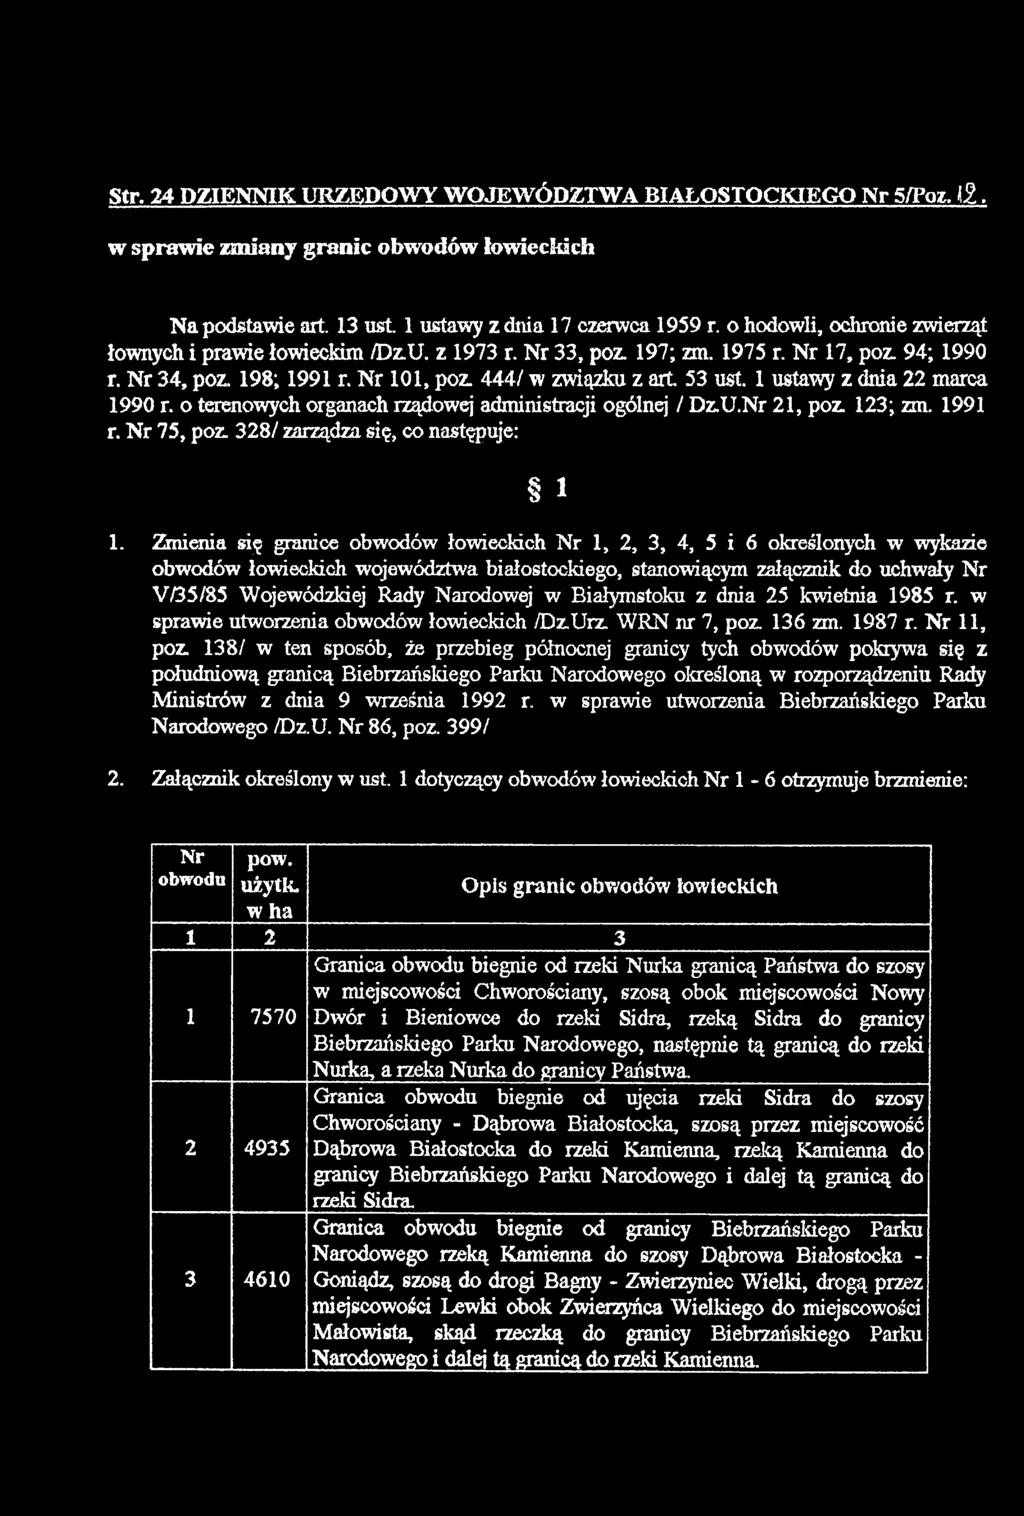 Narodowej w Białymstoku z dnia 25 kwietnia 1985 r. w sprawie utworzenia obwodów łowieckich /DzUrz. WRN nr 7, poz. 136 zm. 1987 r.